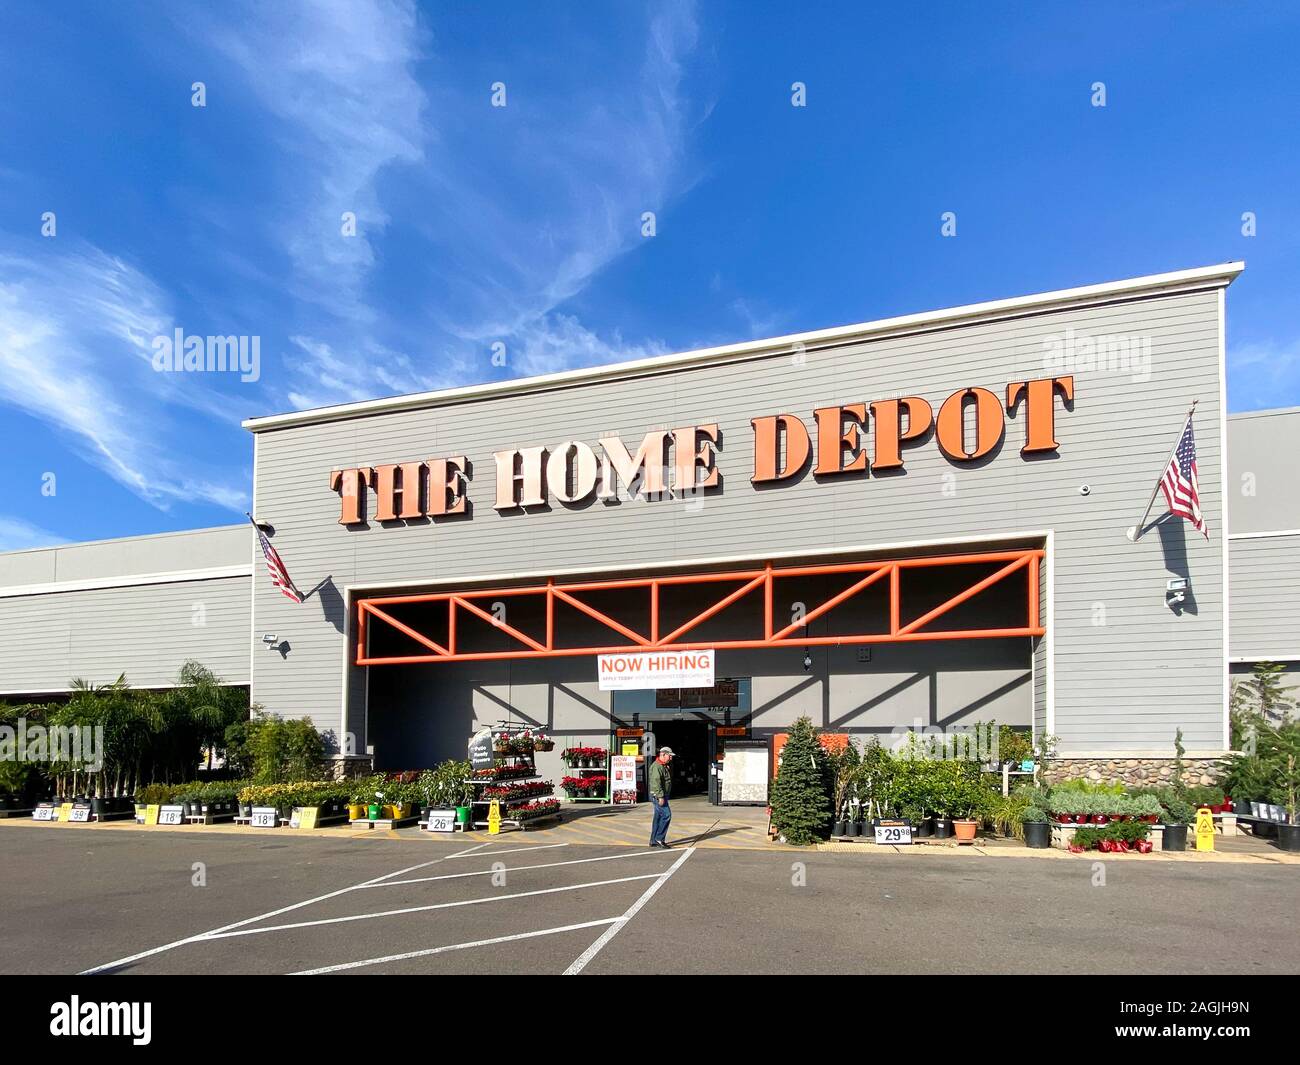 La tienda Home Depot en San Diego, California, USA. Home Depot es el mayor  minorista de mejoras para el hogar y servicios de construcción en los  Estados Unidos. Noviembre 13th, 2019 Fotografía